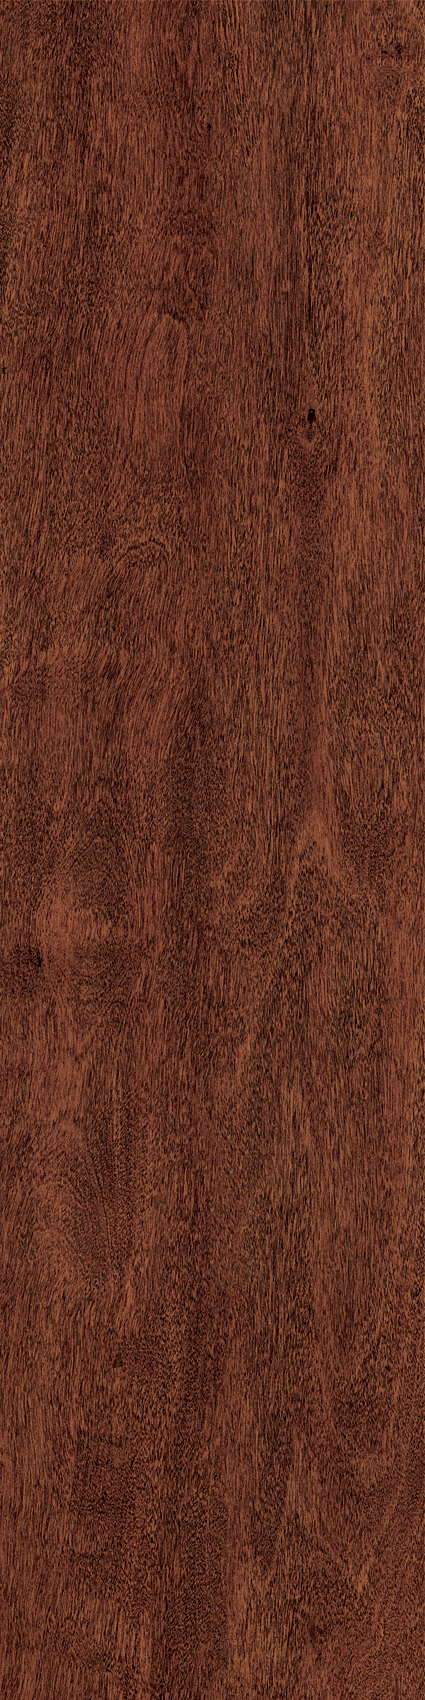 红 橡木 地板 贴图 格式 jpg格式 材质贴图 红橡木